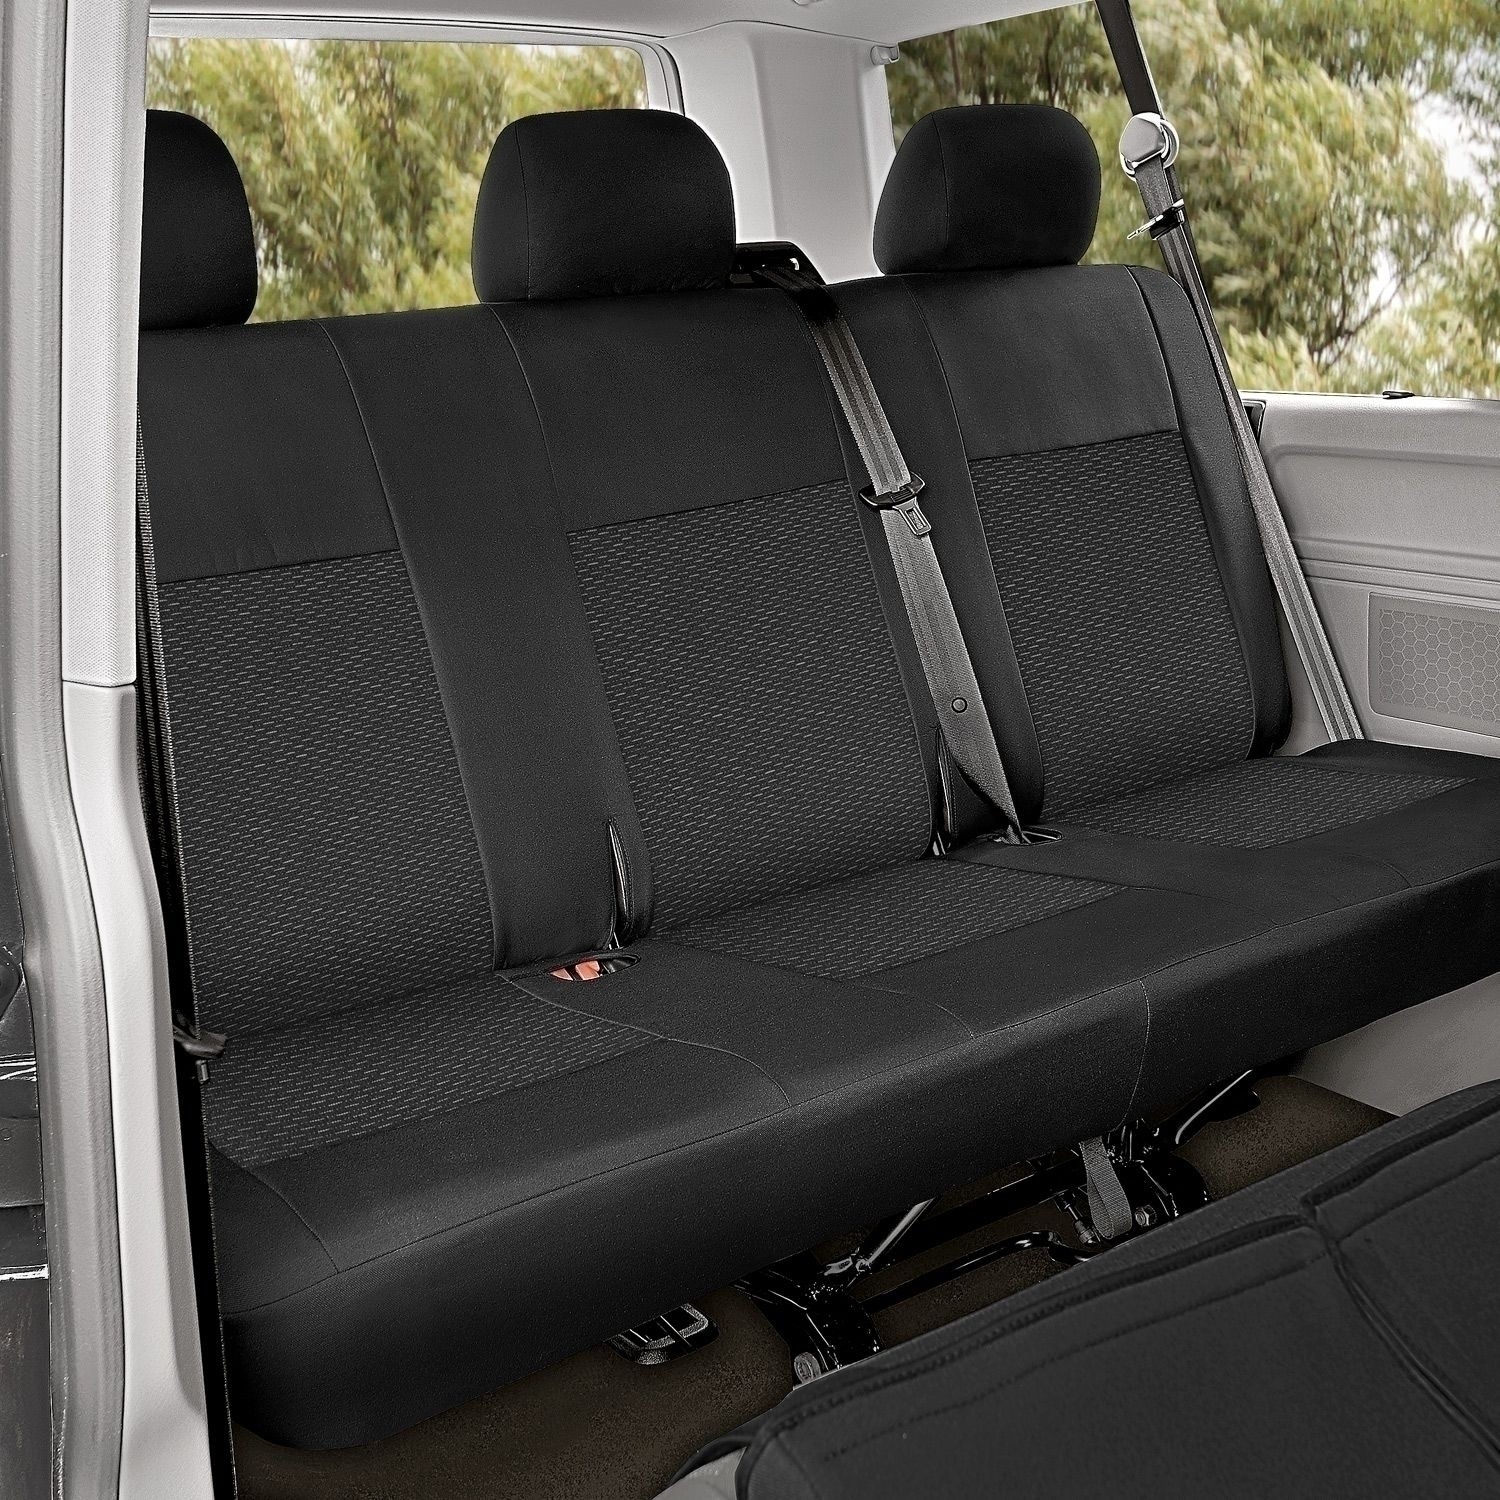 Sitzbezug-Set für dritte Sitzreihe für VW T5 & VW T6 - 100